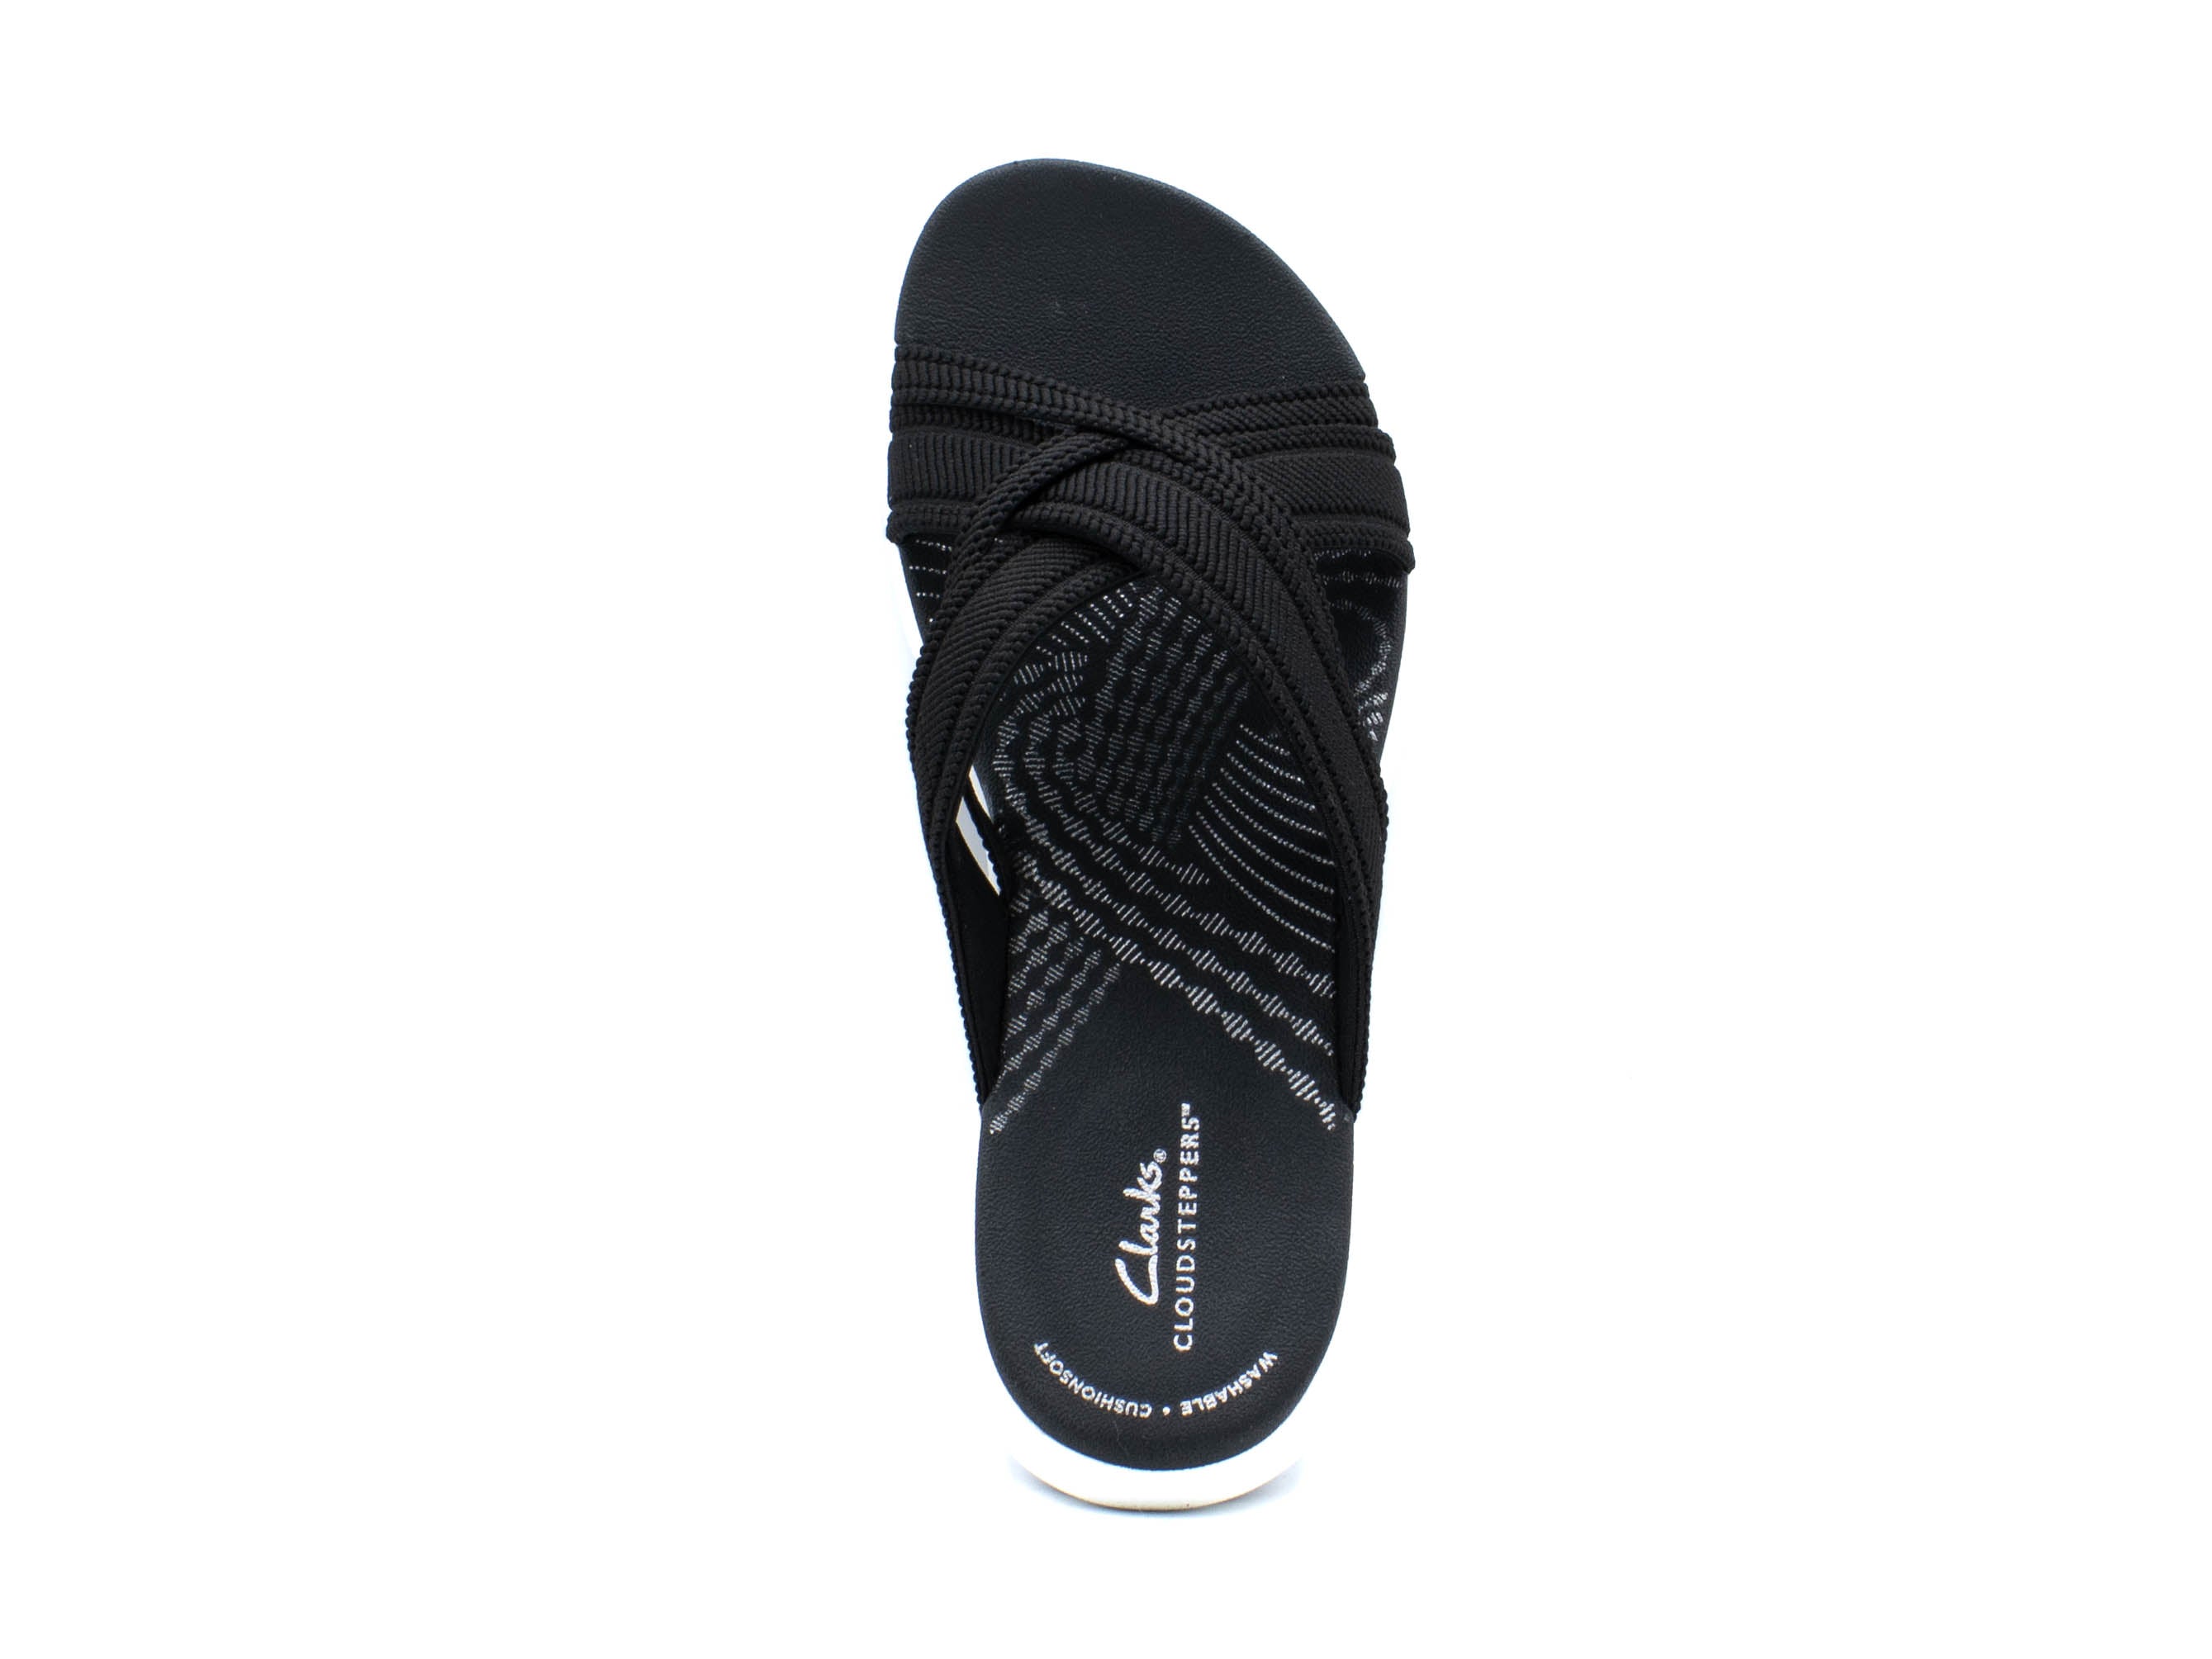 CLARKS Mira Isle Black Slide Sport Sandal